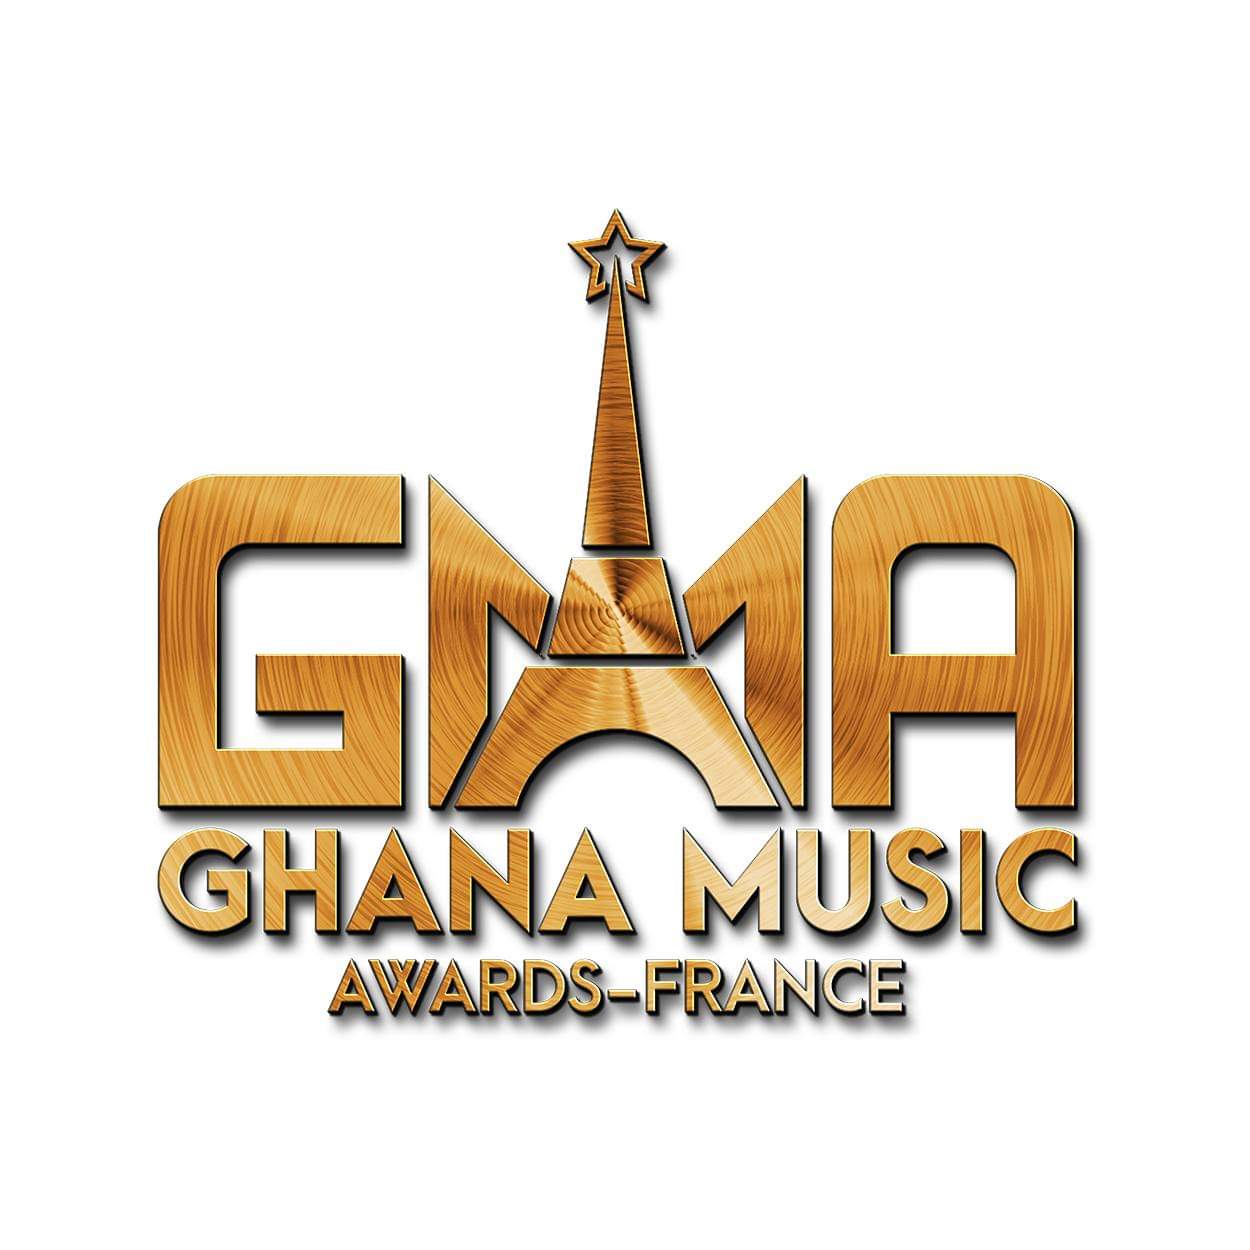 Ghana Music Awards-France